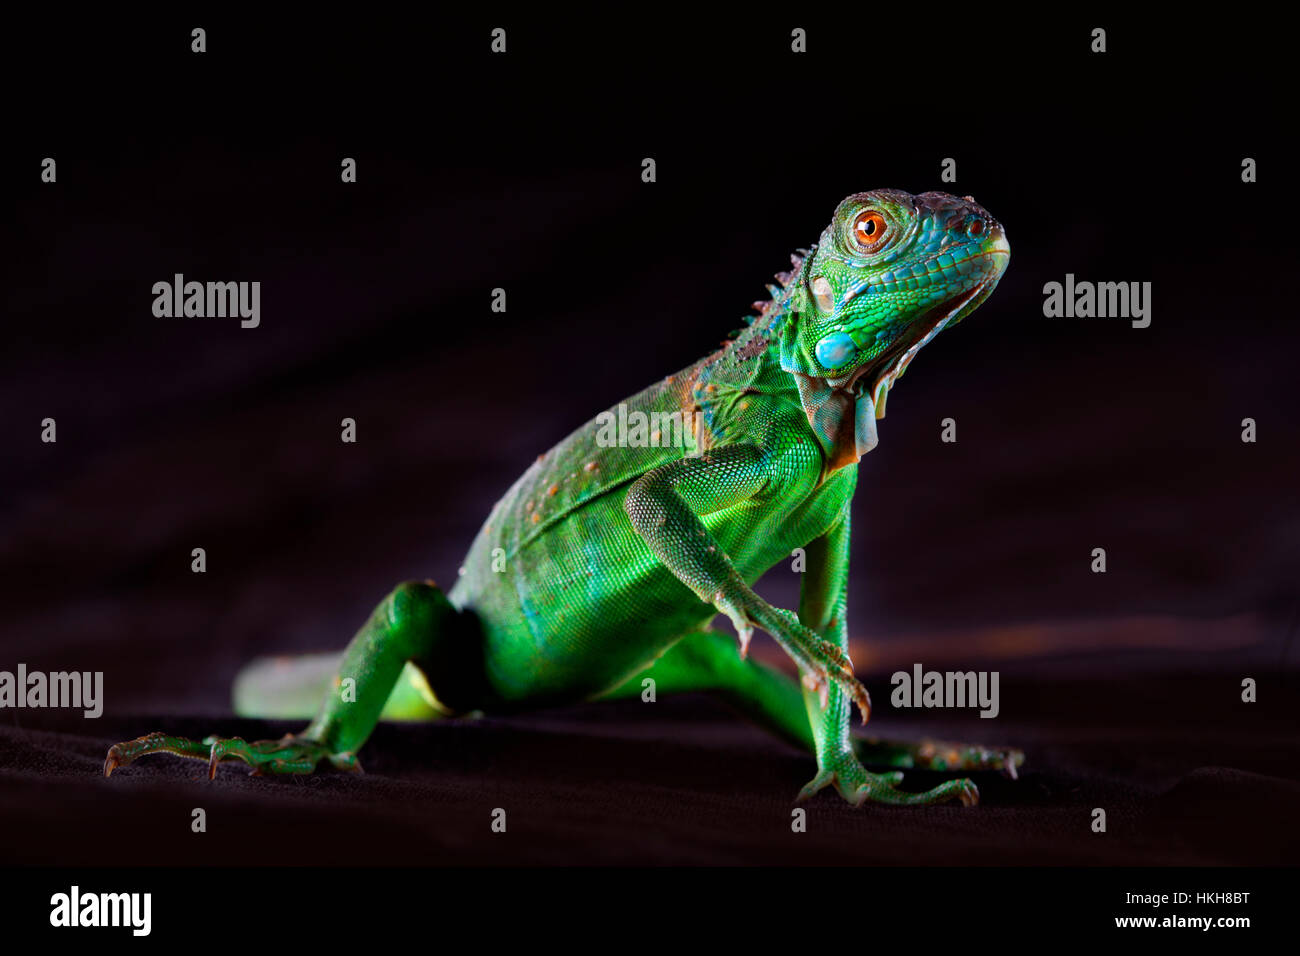 Baby iguana stand Stock Photo